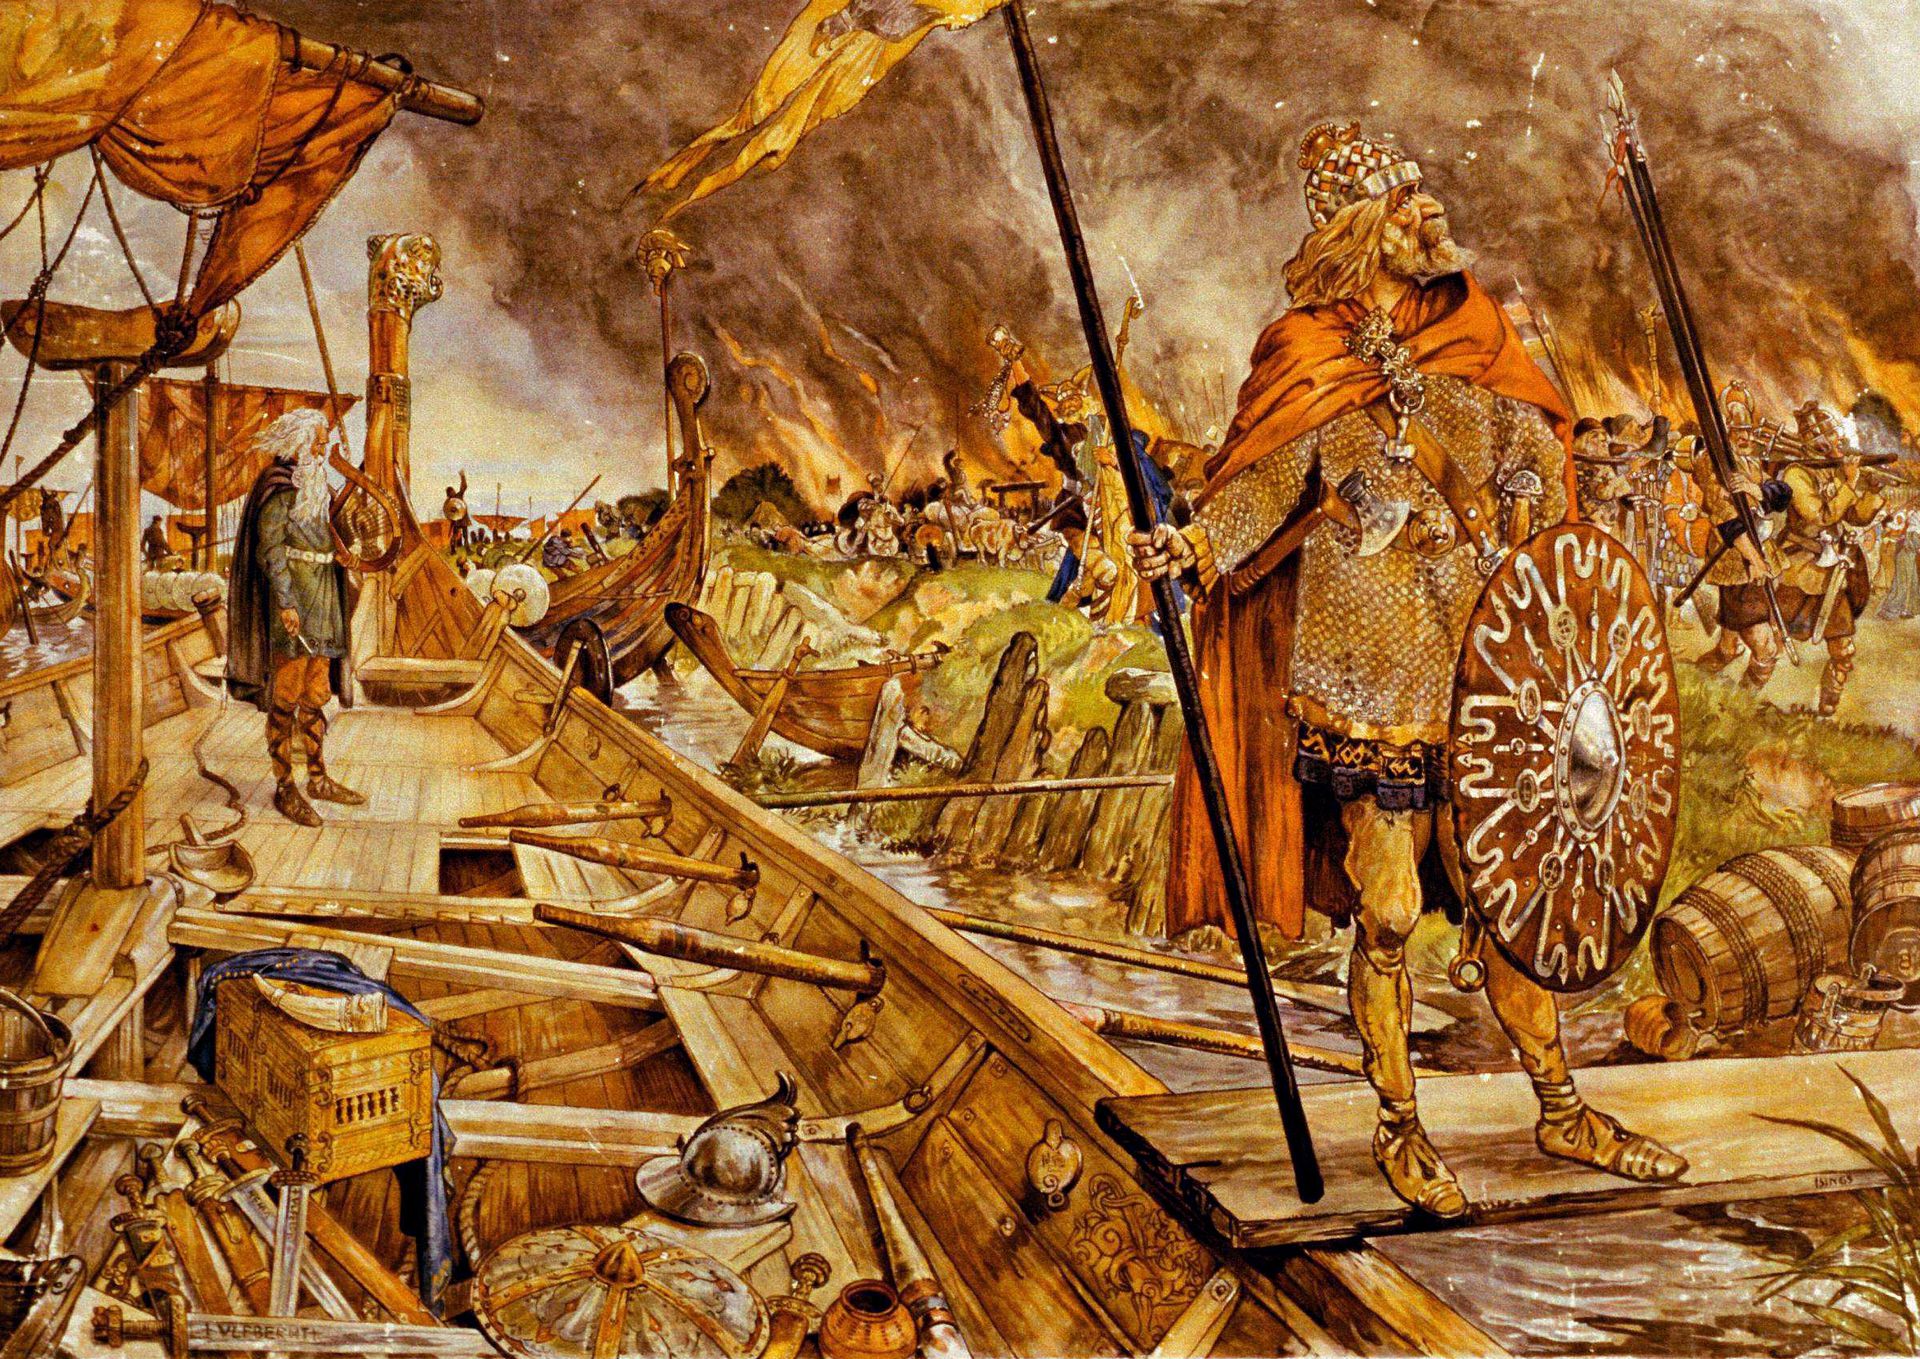 Викинги нападение. Варяги Норманны. Харальд суровый Викинги. Древняя Скандинавия эпоха викингов. Бритты, Норманны, Варяги (Викинги).